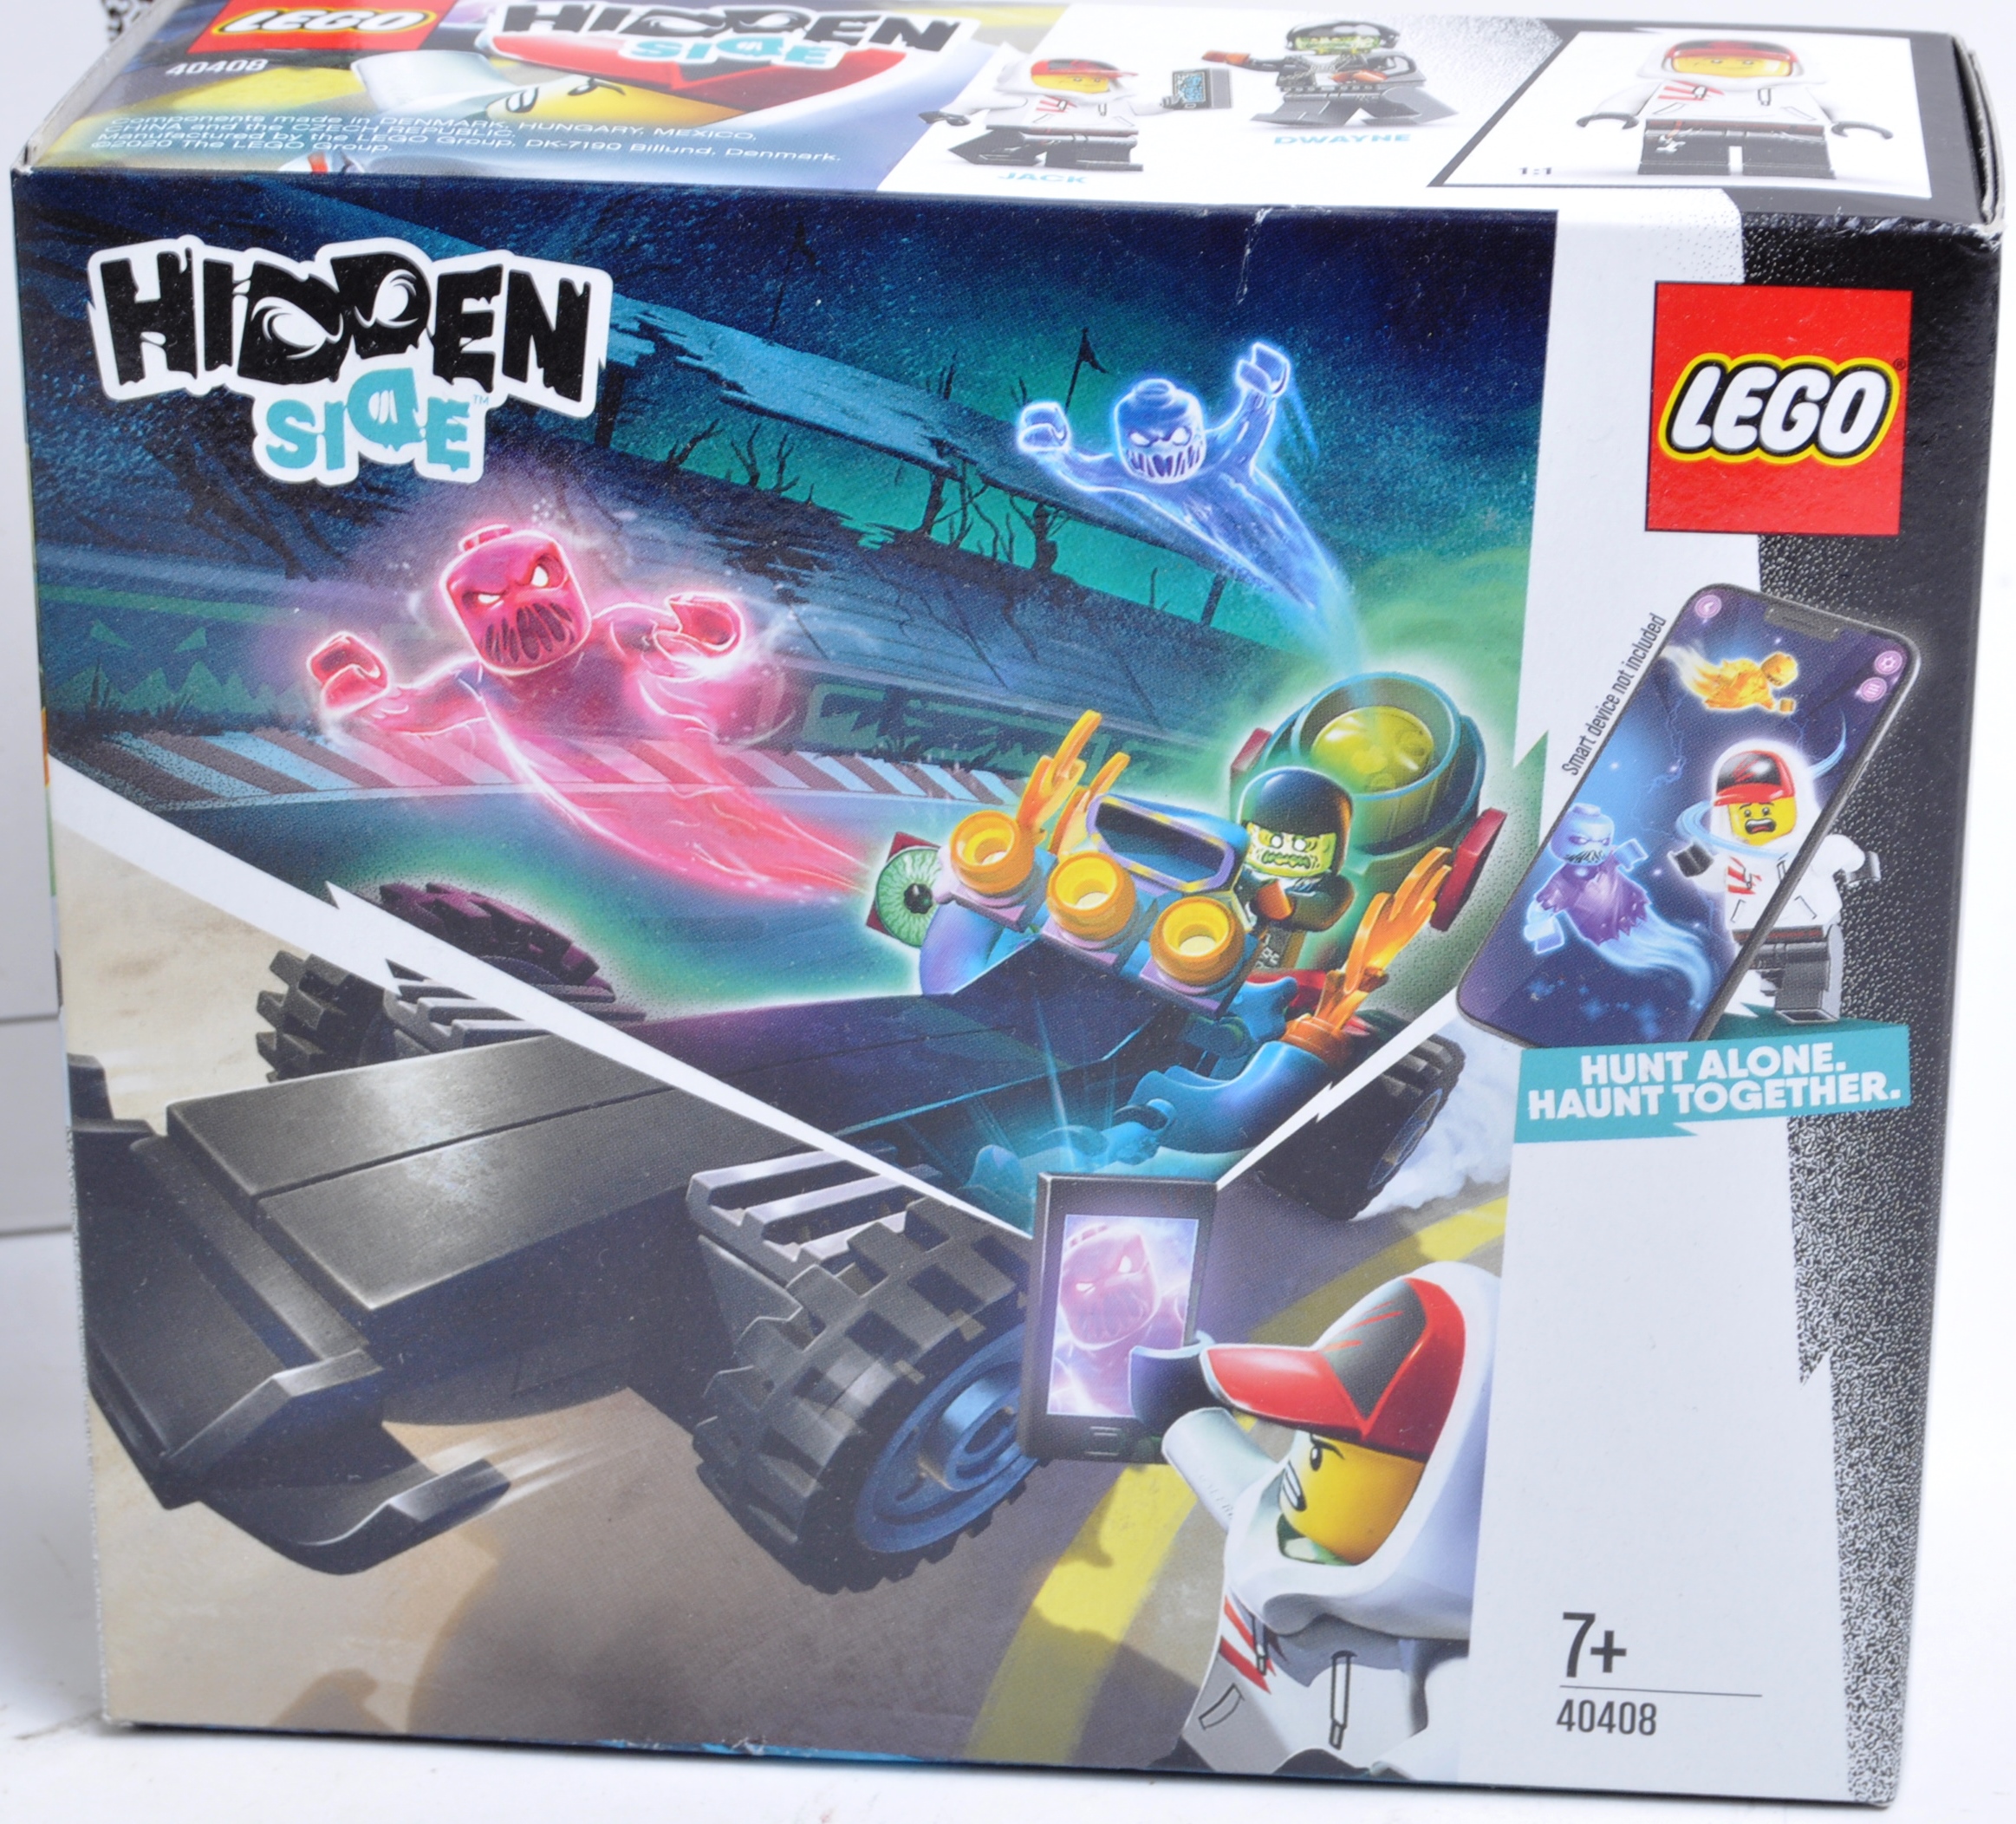 LEGO SETS - LEGO HIDDEN SIDE - Image 4 of 6